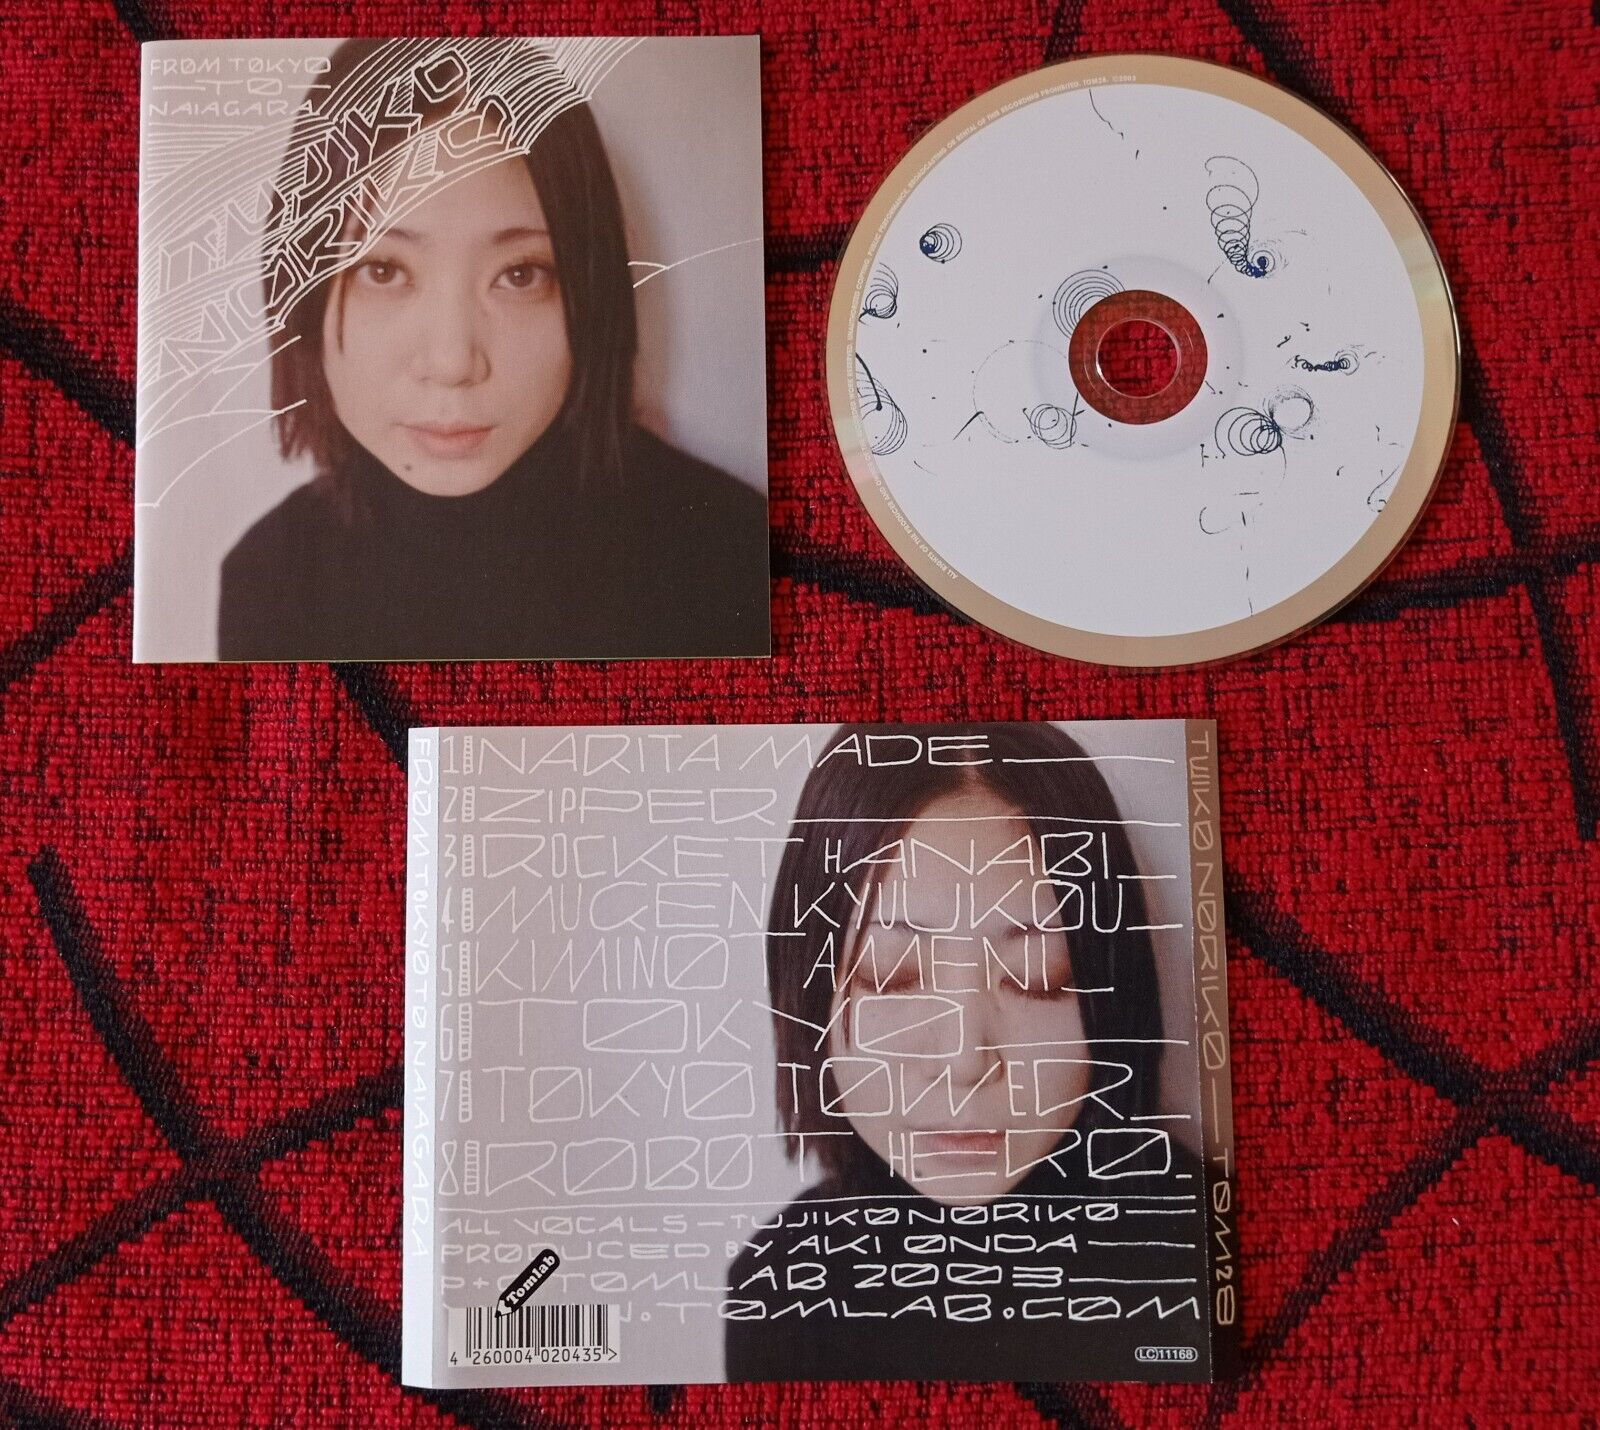 TUJIKO NORIKO ** From Tokyo To Naiagara ** ORIGINAL 2003 GERMANY CD | eBay